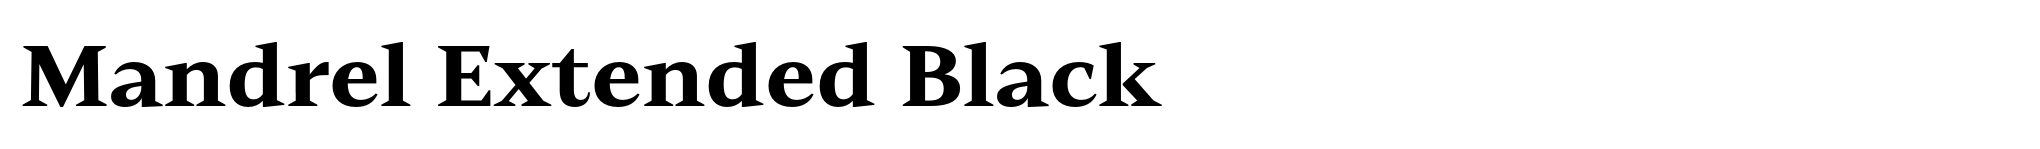 Mandrel Extended Black image